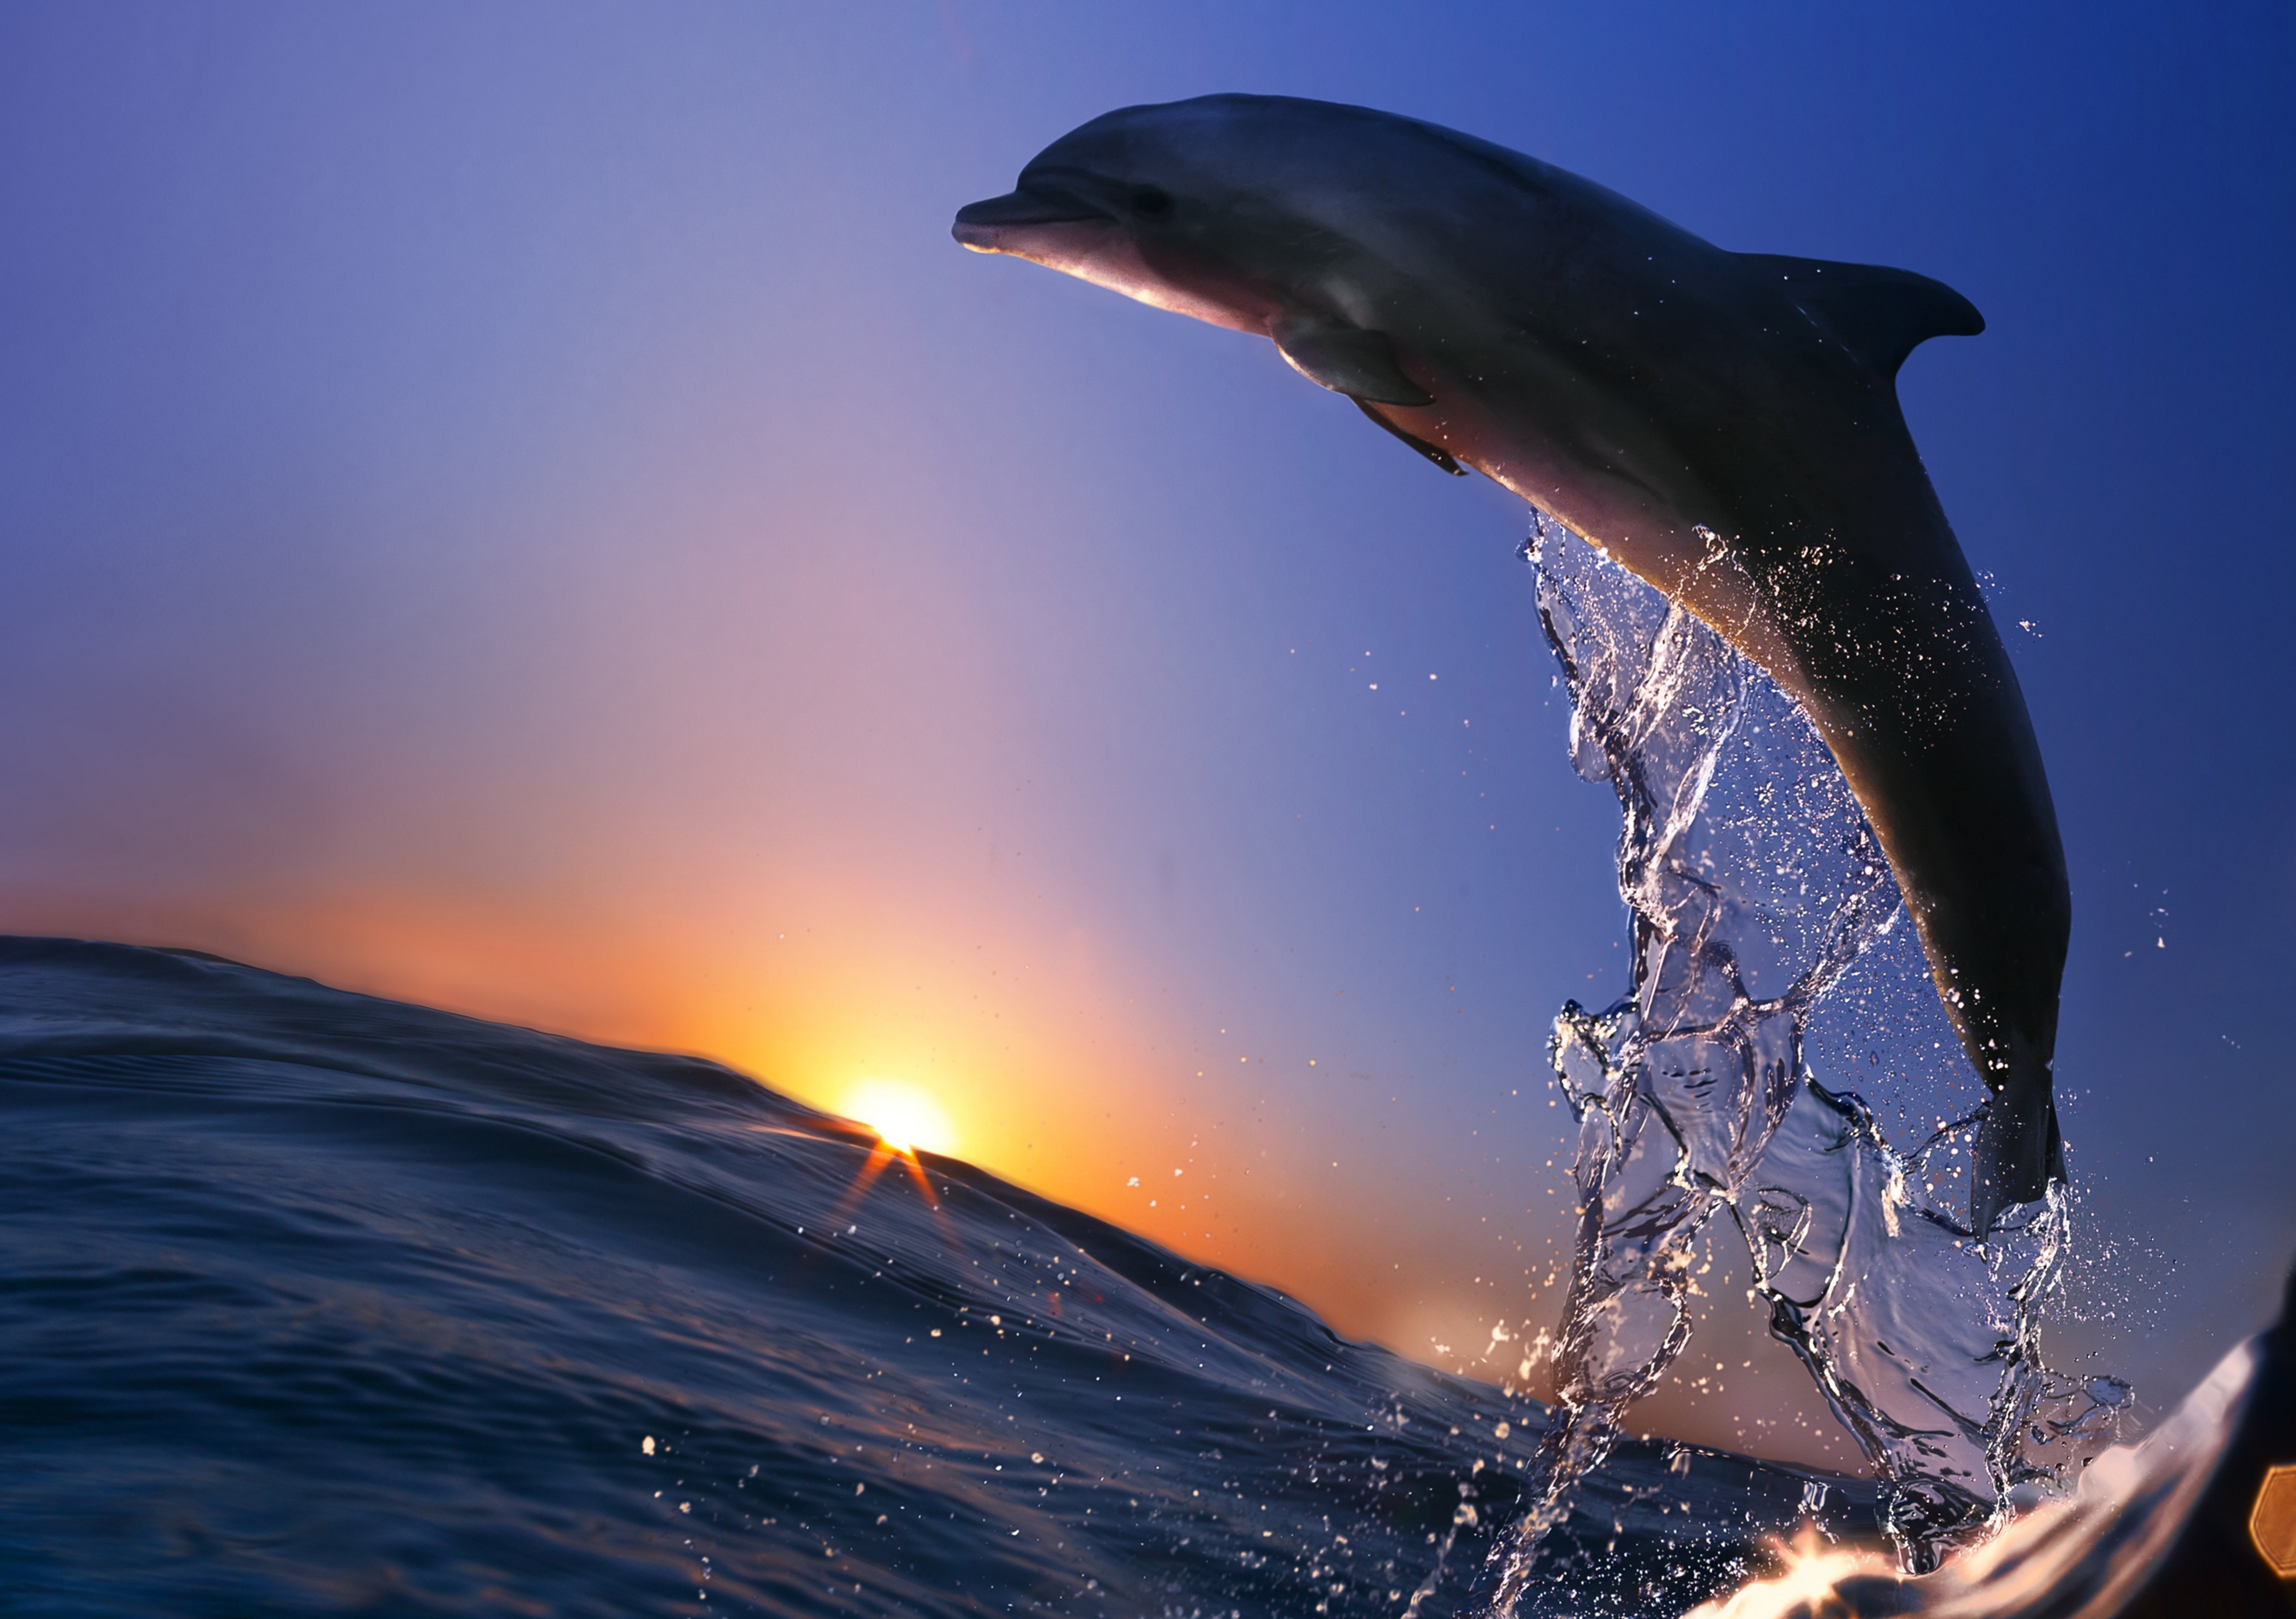 Delfines Imagenes Y Fondos De Delfines Wallpapers Images